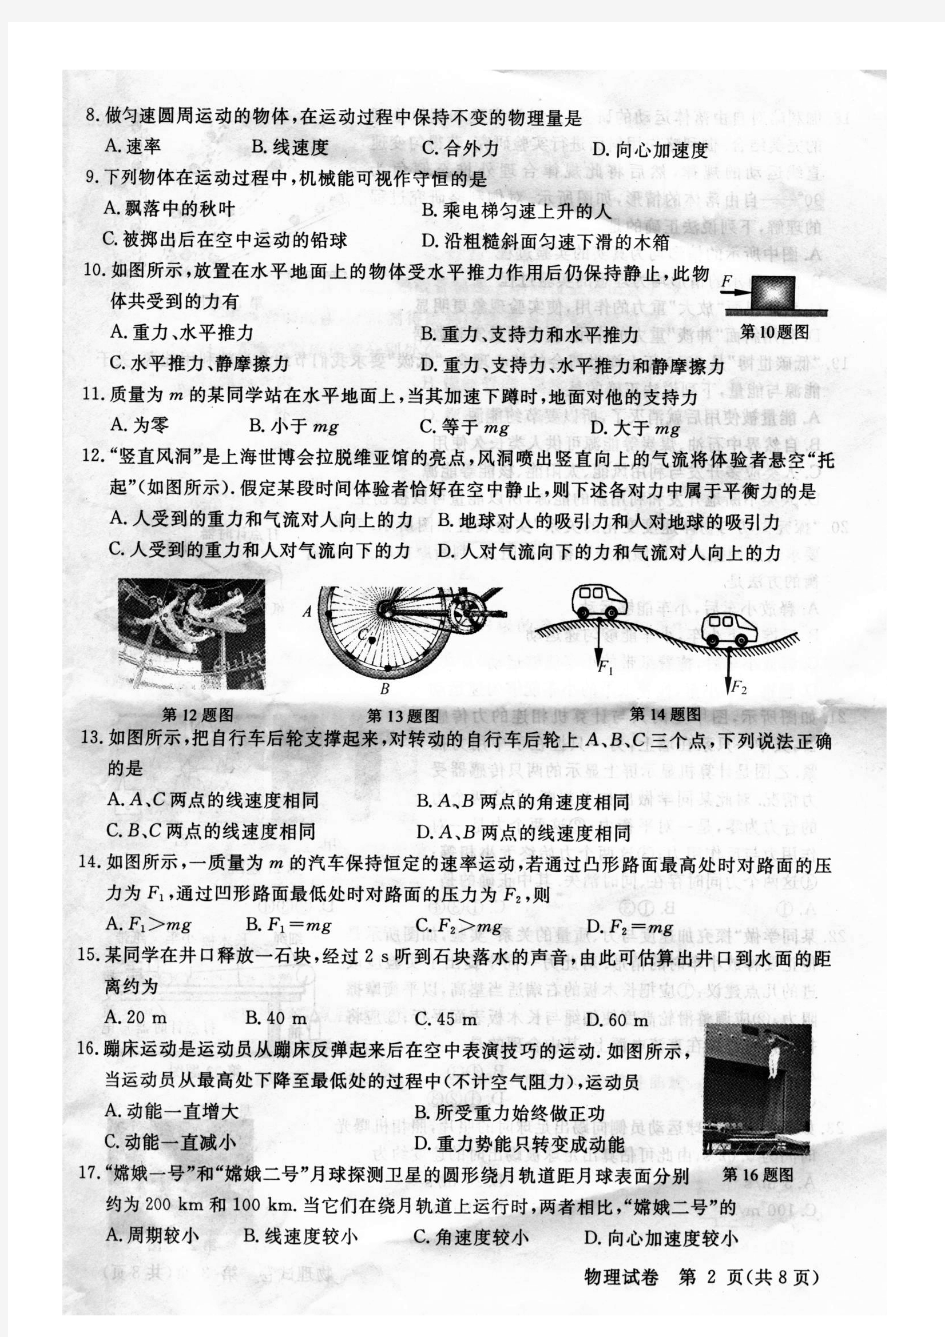 2011年浙江省普通高中会考物理试卷(含评分标准)【高清晰扫描版】